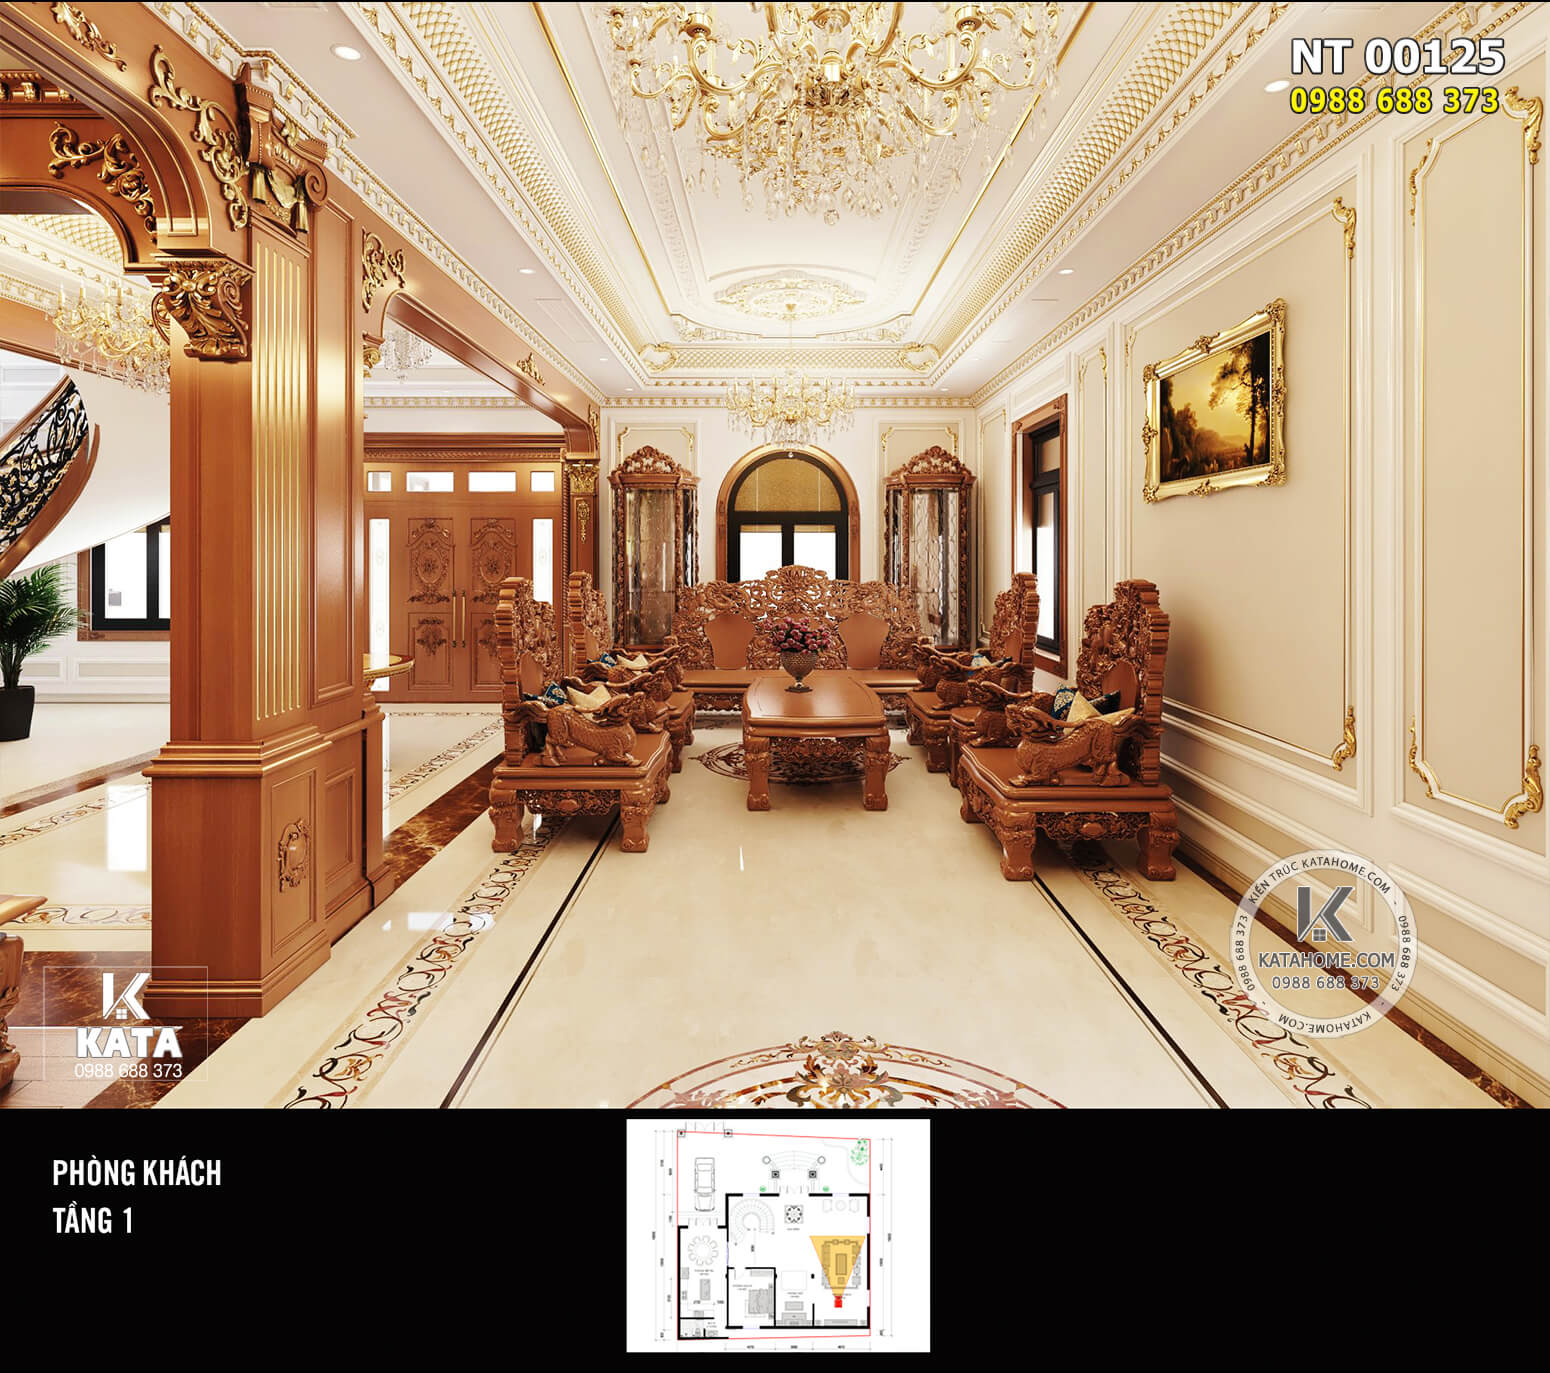 Hình ảnh: Phòng khách tân cổ điển trong ngôi biệt thự cao cấp